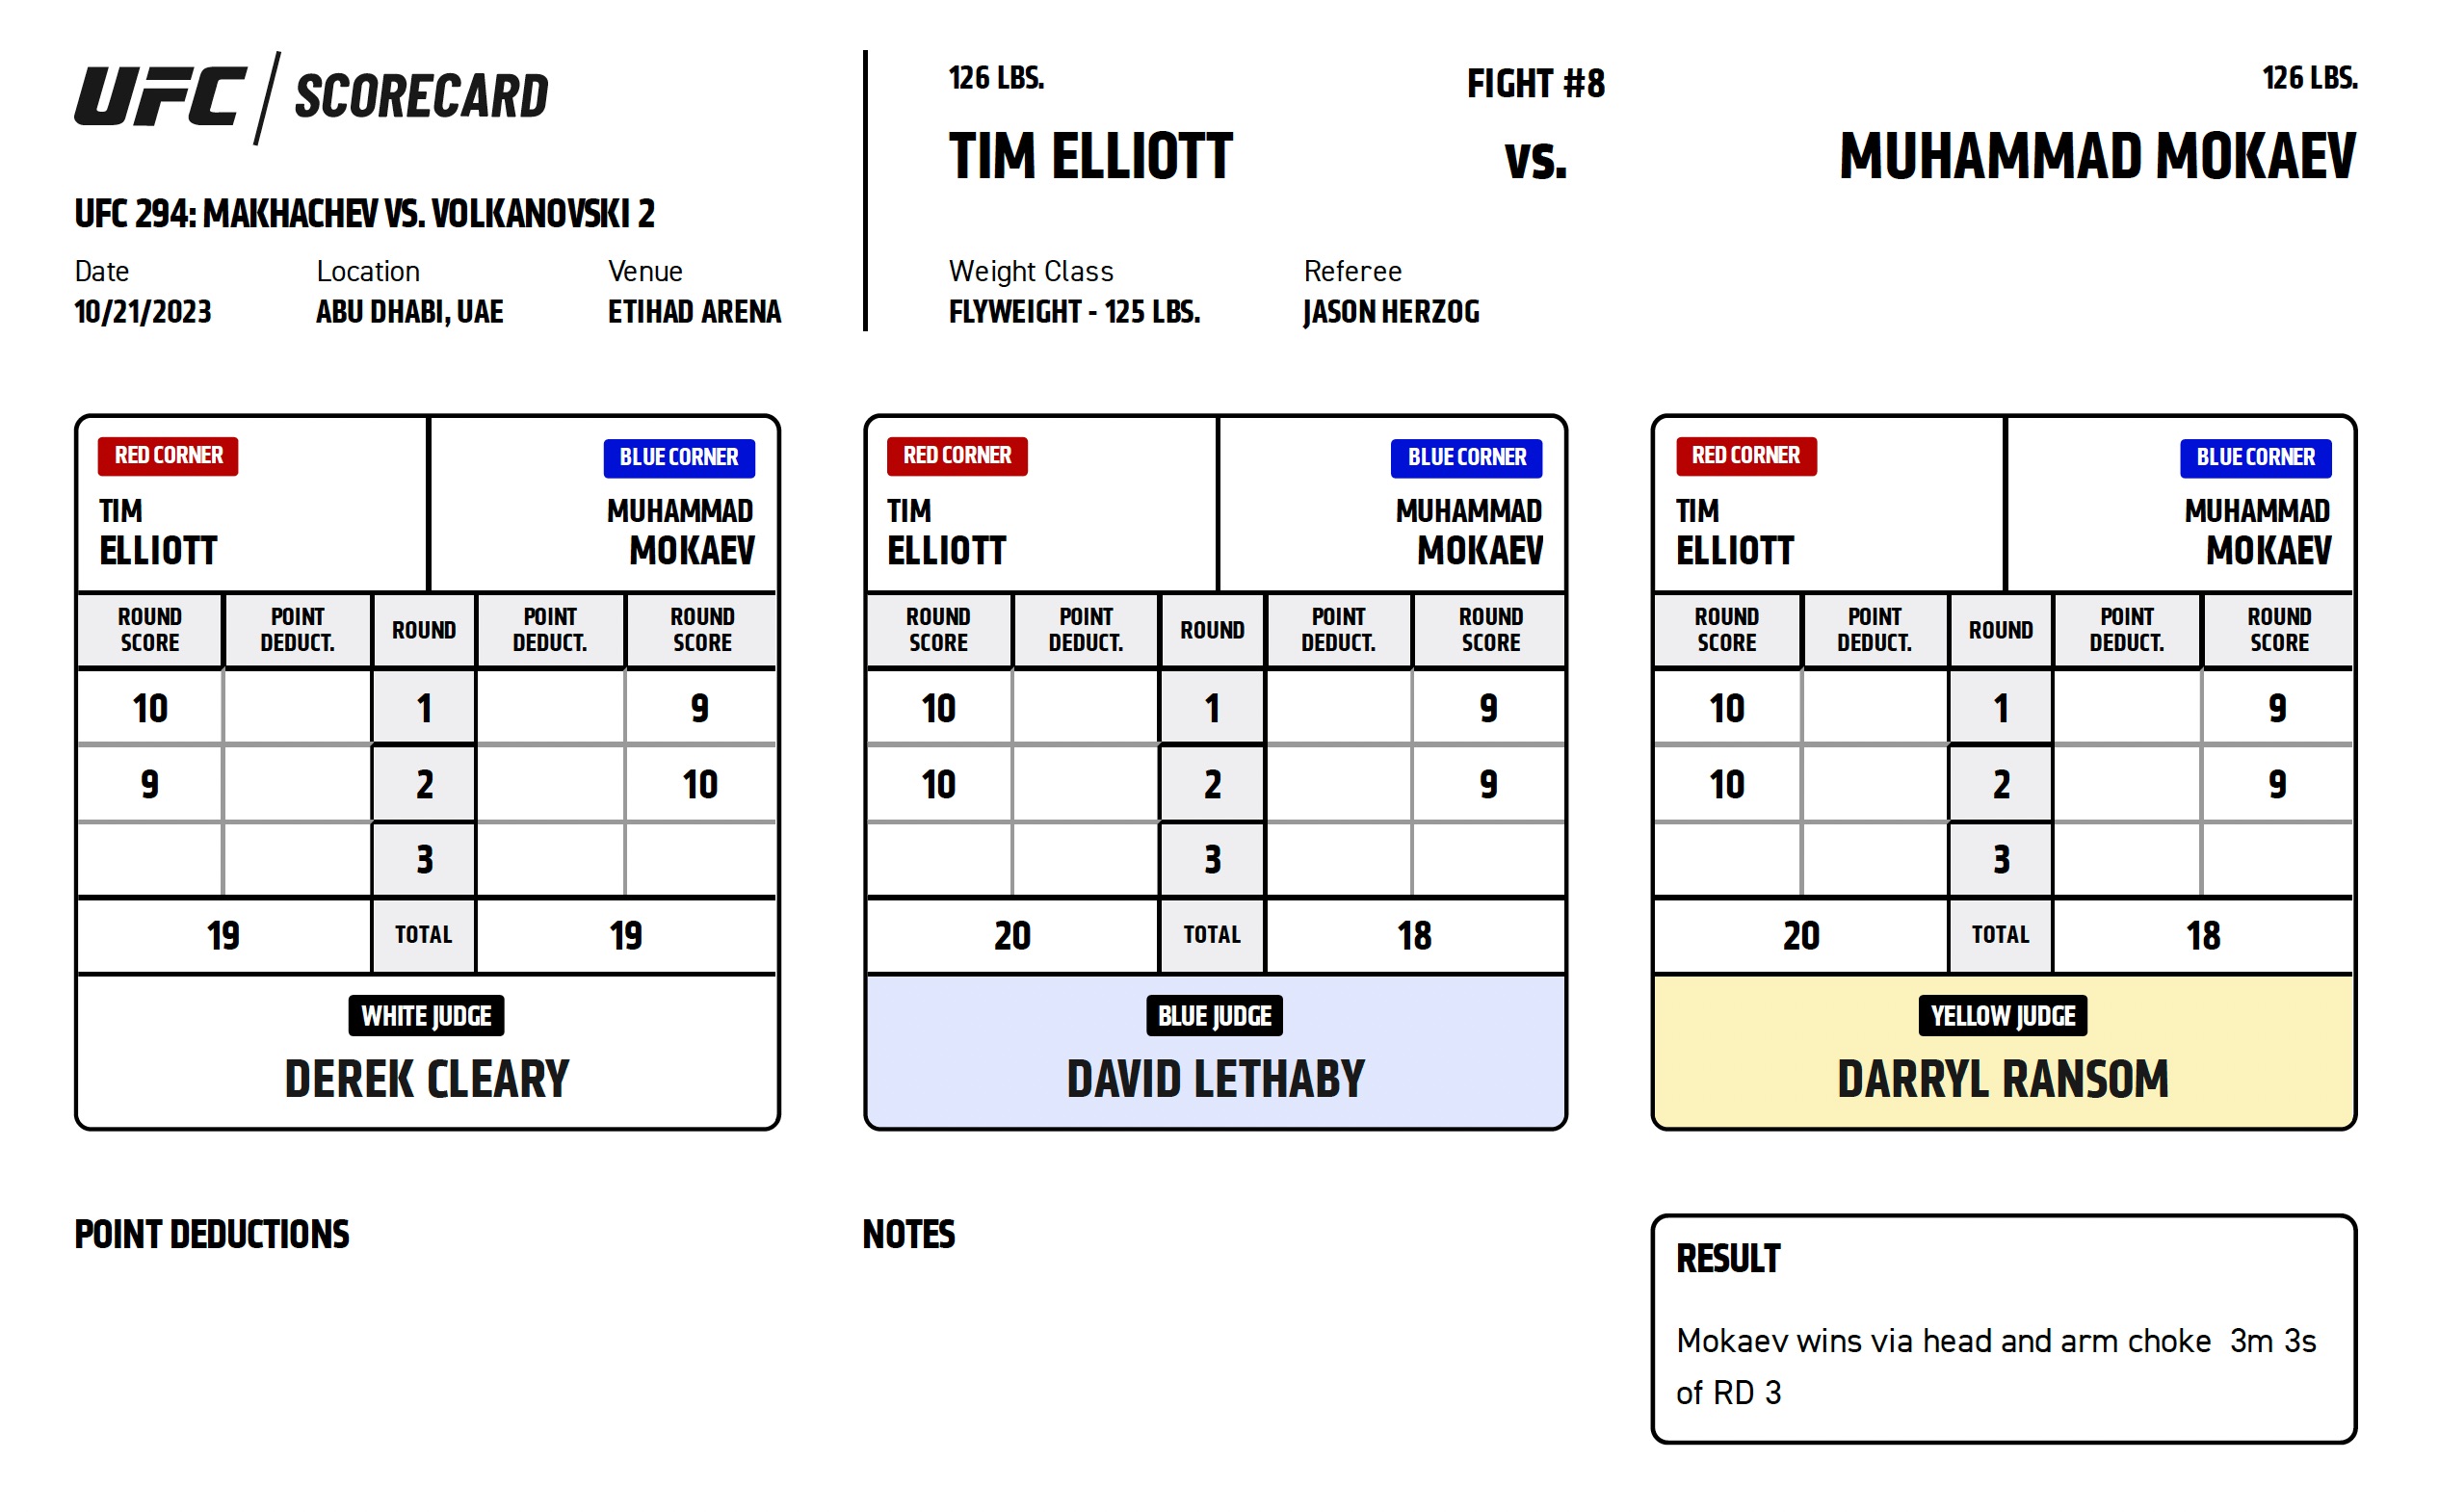 Scorecard : Combat Categorie - Poids Mouches : Muhammad Mokaev vs. Tim Elliott - UFC 294 - MAKHACHEV VS. VOLKANOVSKI 2